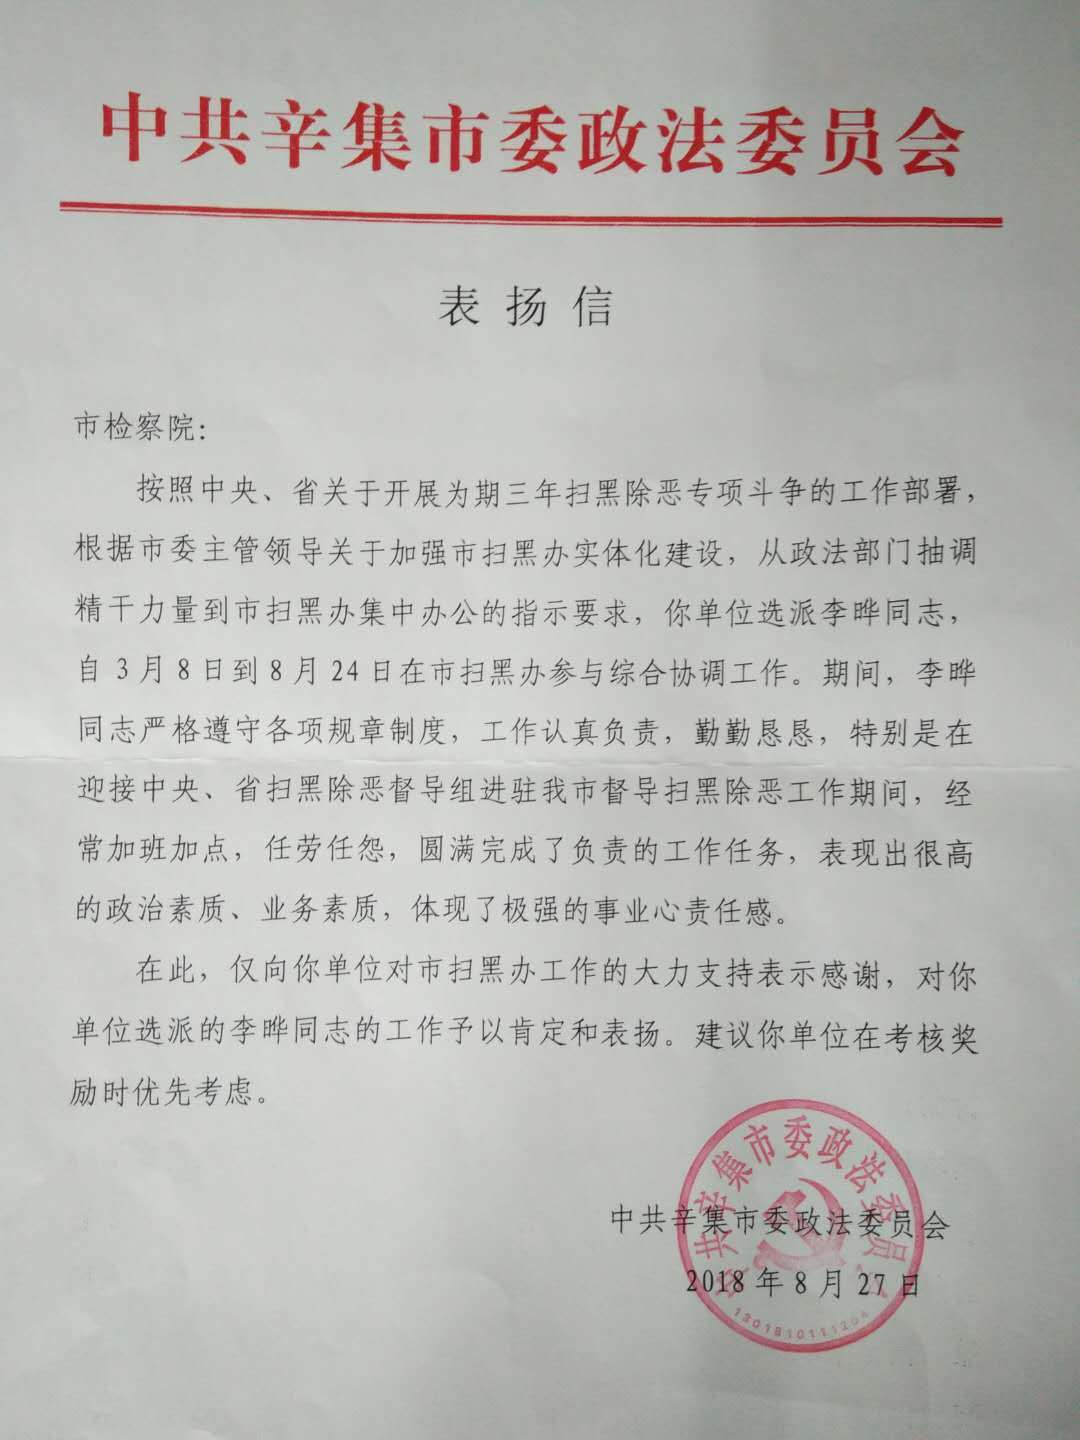 近日,我院收到市委政法委一封表扬信,对选派到市扫黑办工作的李晔同志